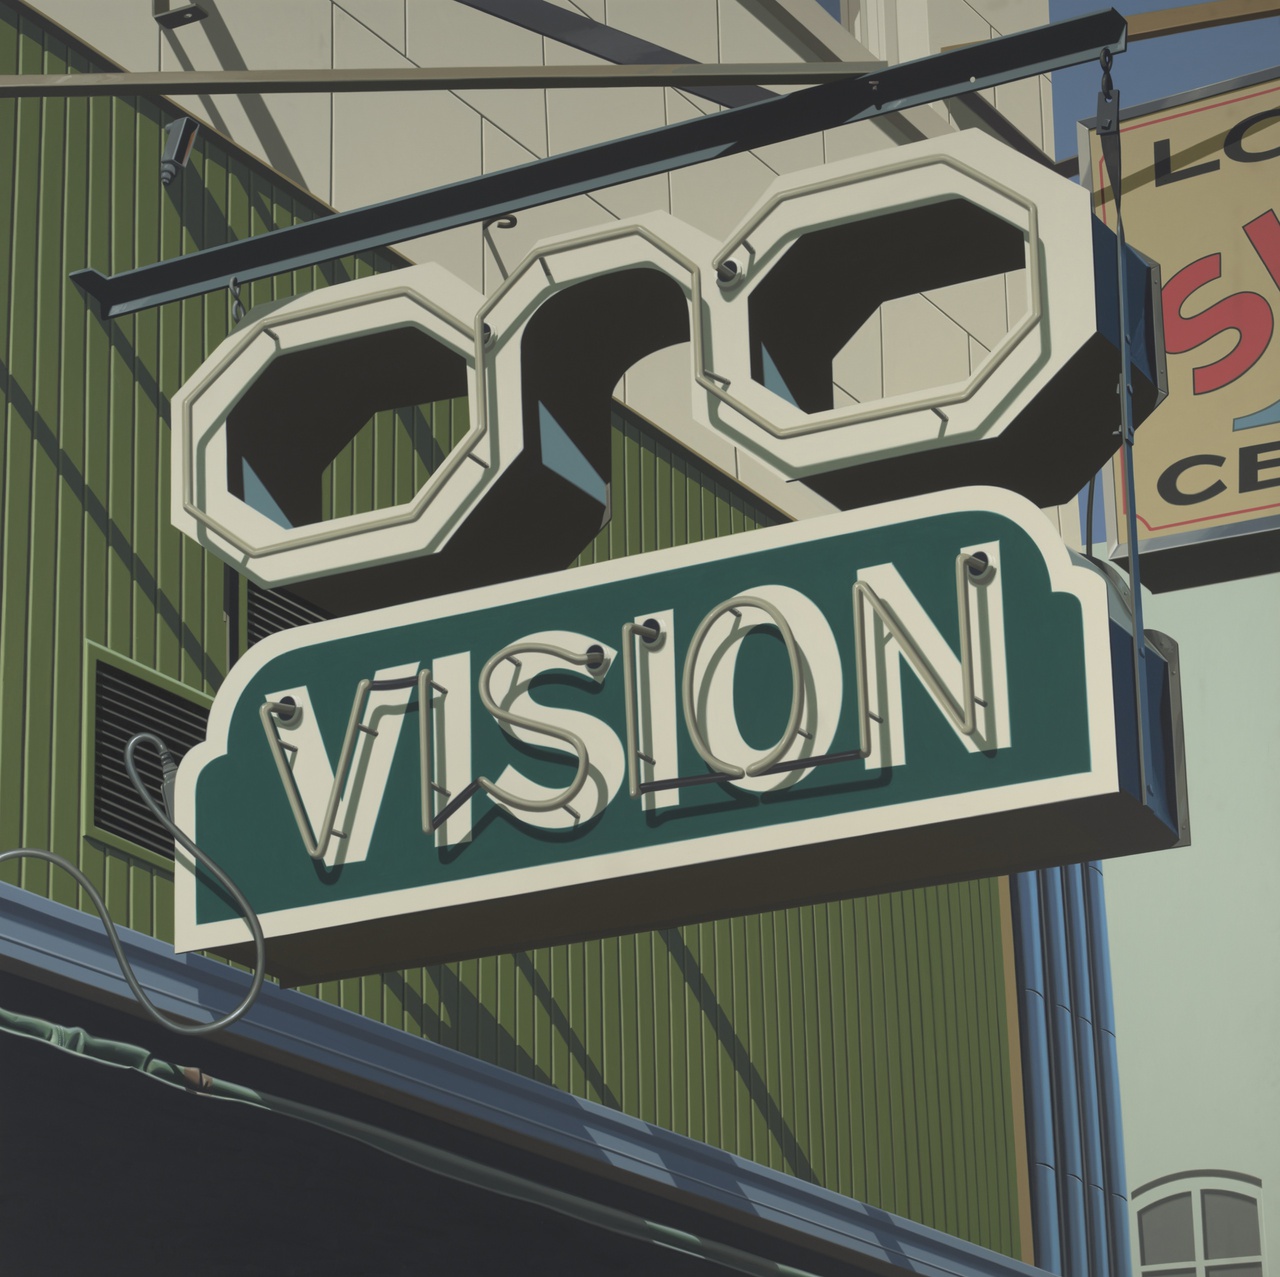 Een uithangbord aan een gevel in de vorm van een bril, eronder de tekst Vision